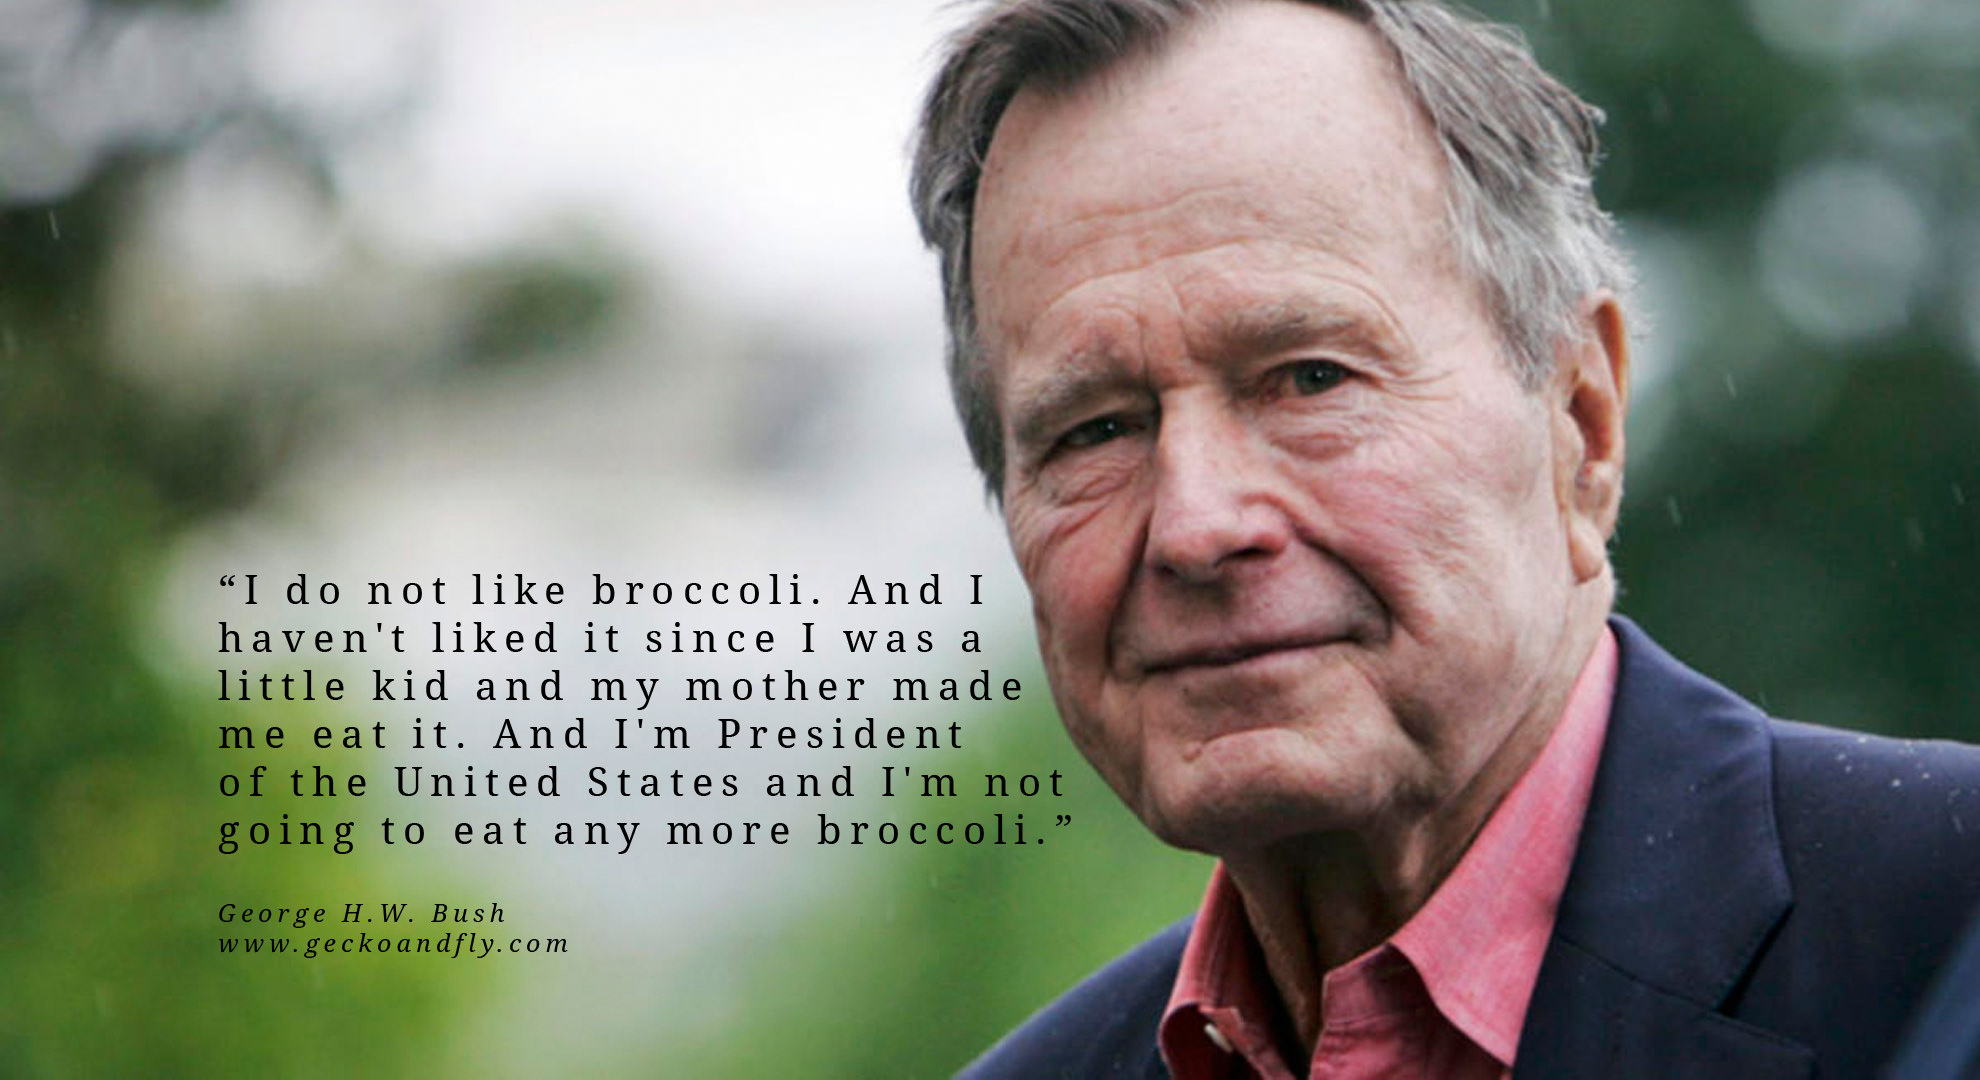 George H. W. Bush Quotes. QuotesGram